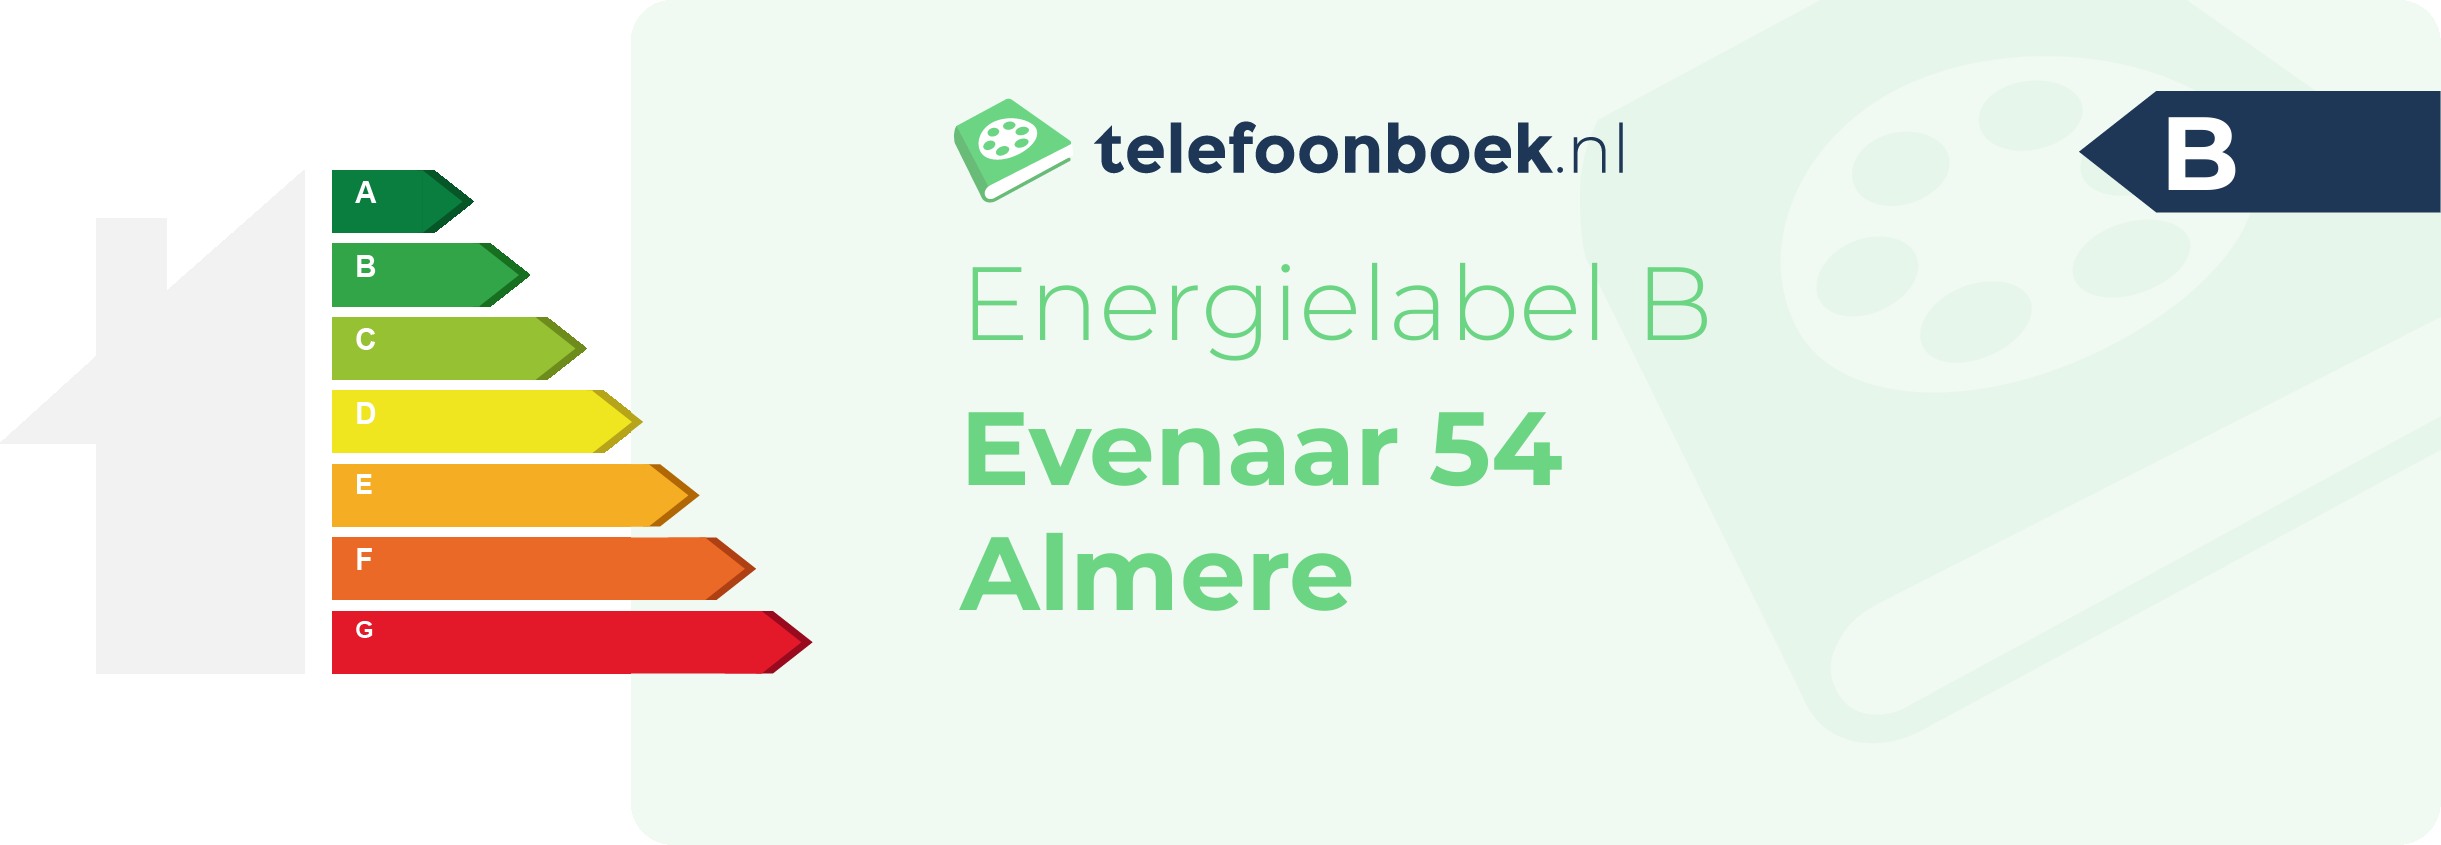 Energielabel Evenaar 54 Almere